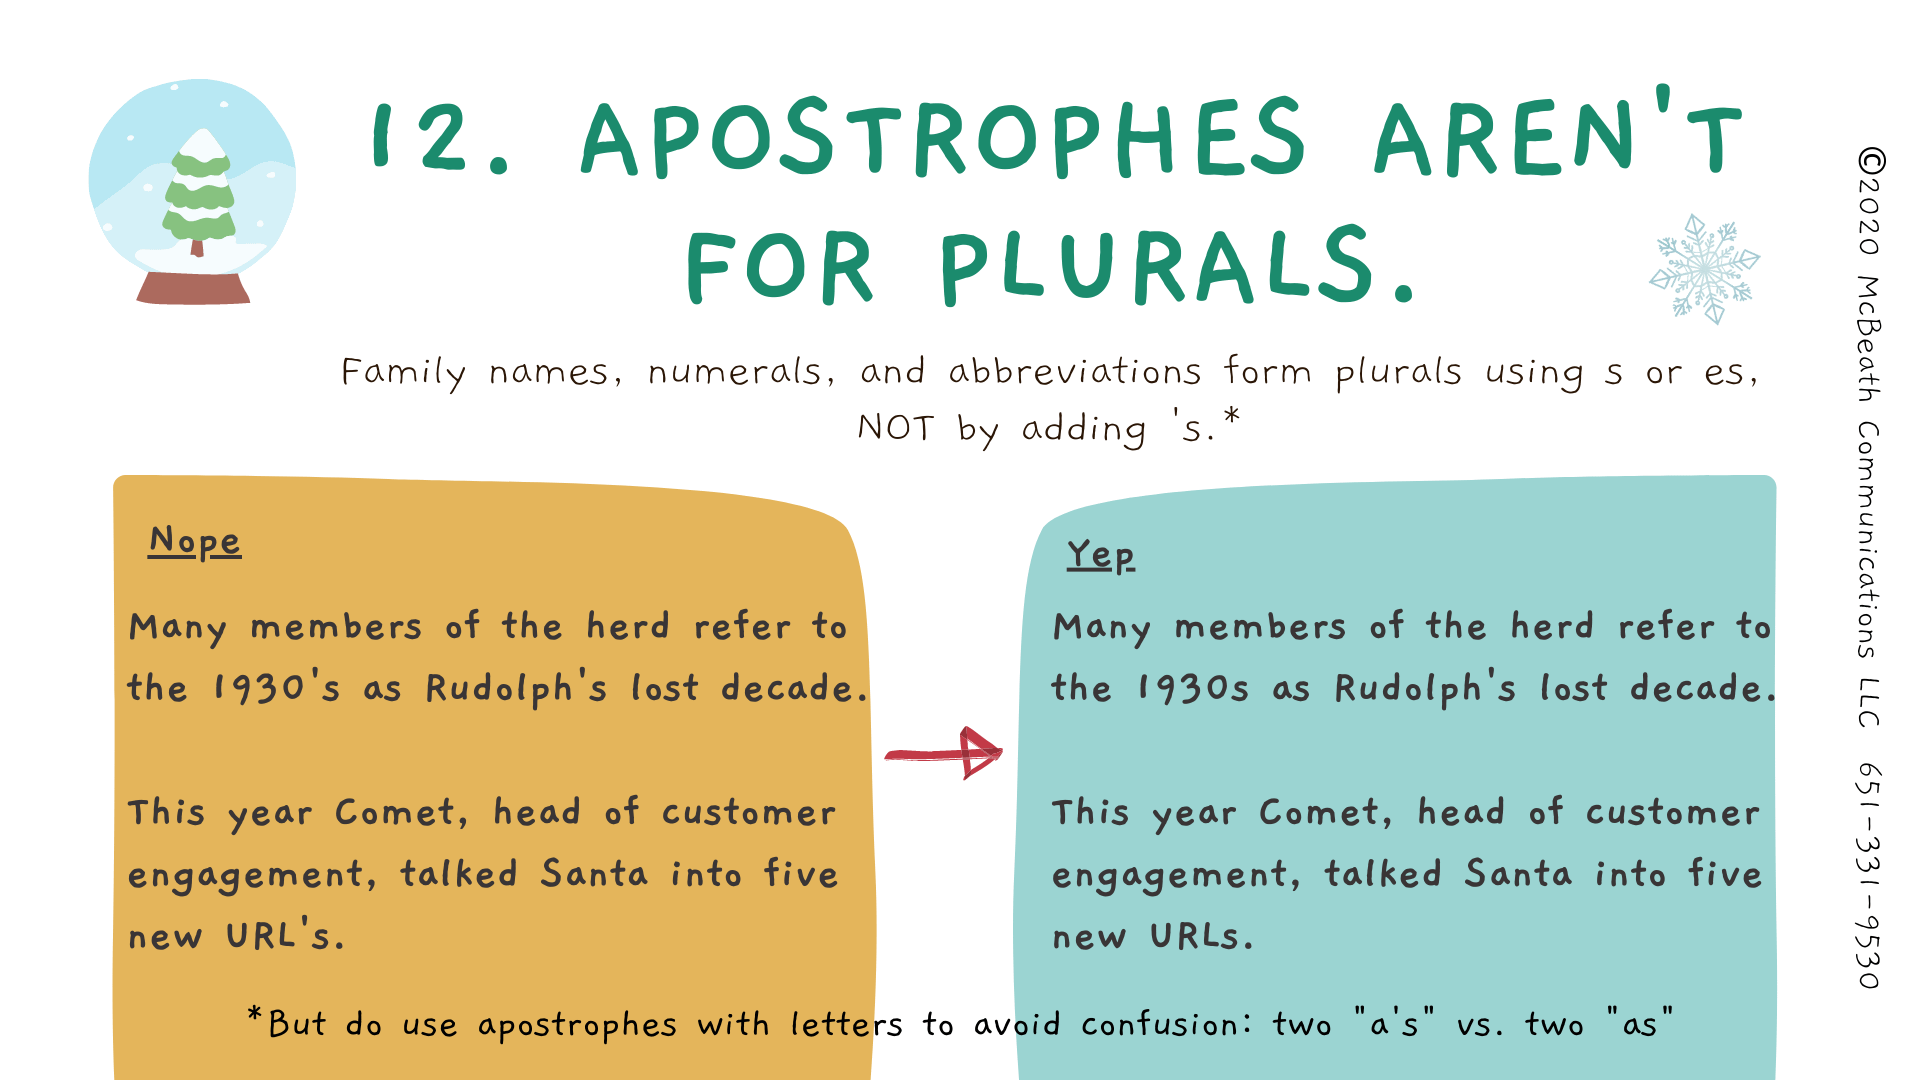 Apostrophes aren't for plurals.